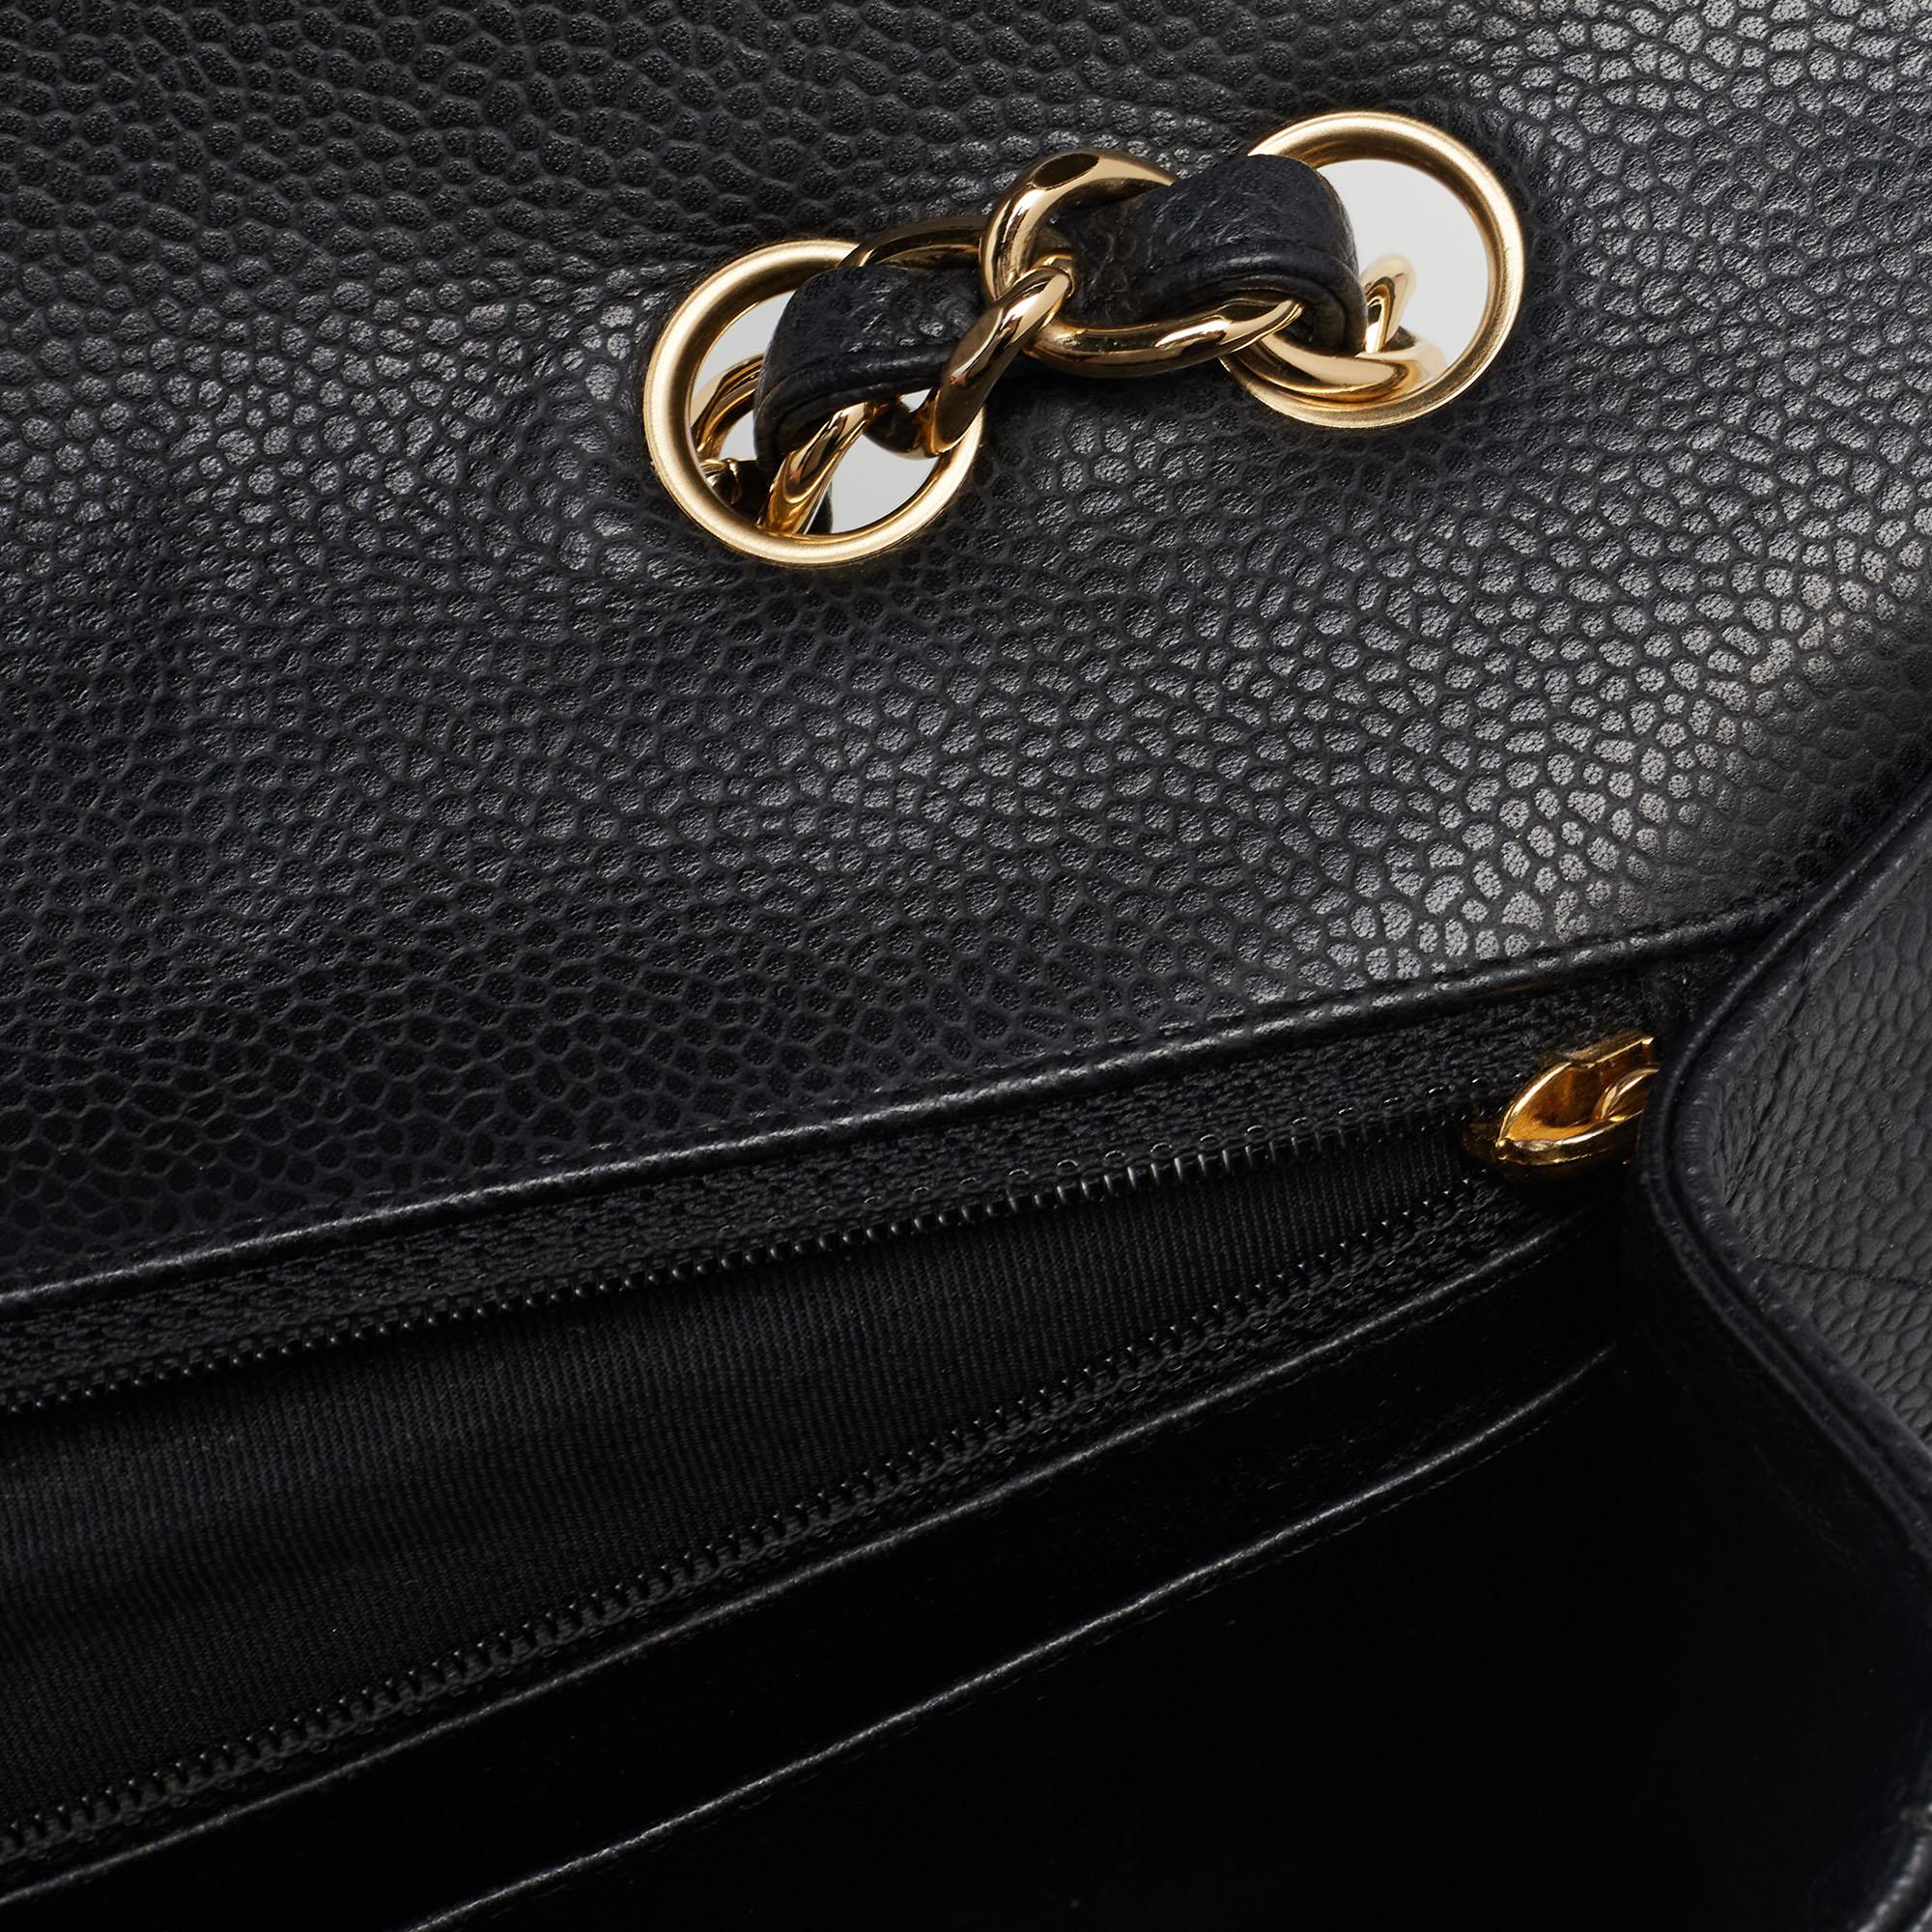 Chanel - Sac à rabat simple classique Jumbo en cuir texturé noir matelassé 5